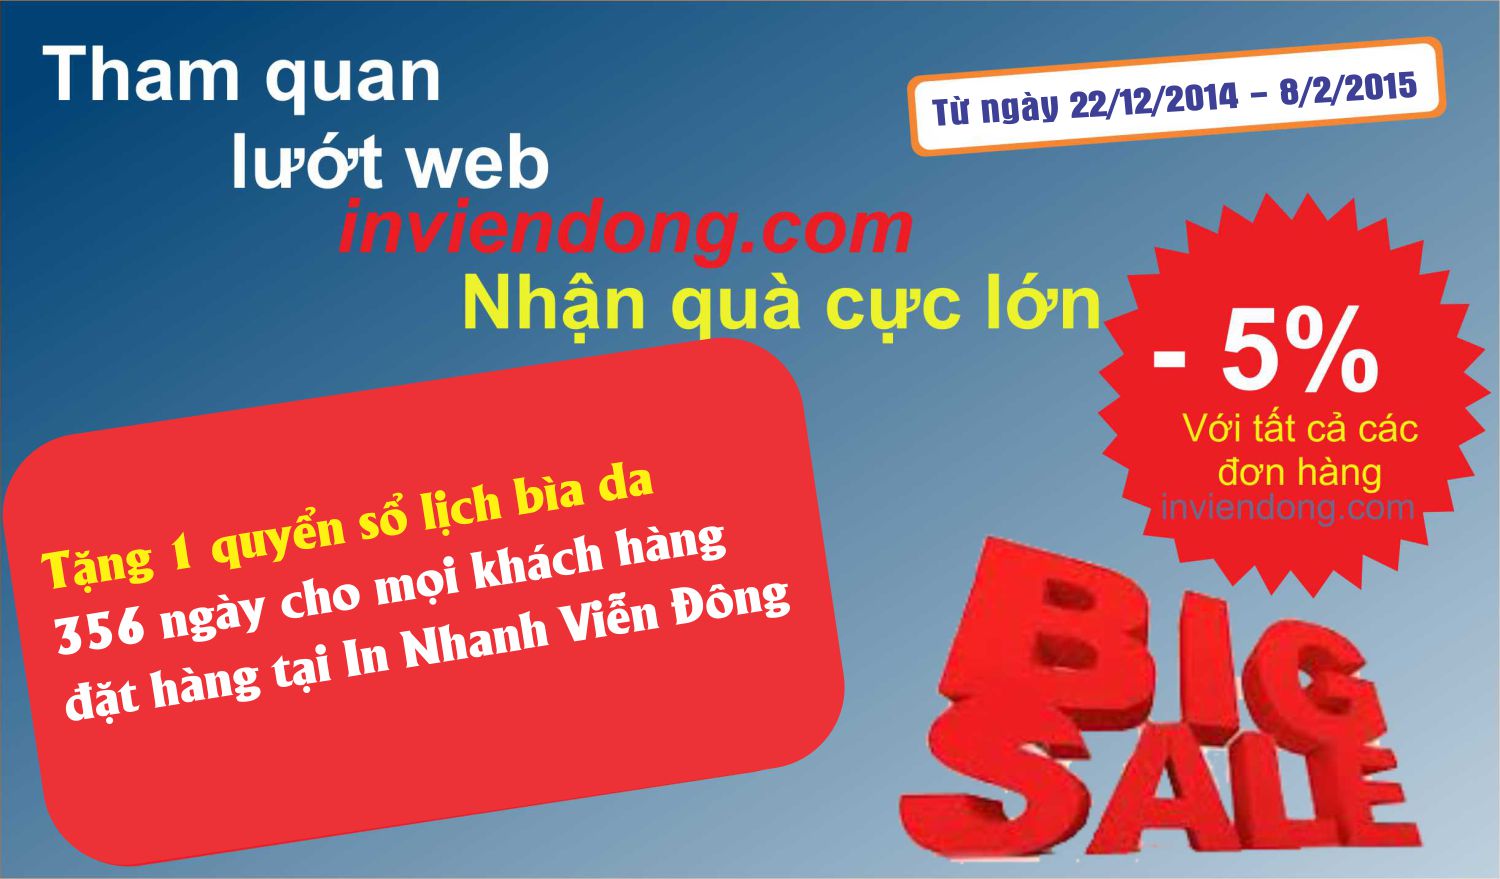 Khuyến mại lớn từ ngày 22/12/2015 tới hết 8/2/2016 (tặng 1 quyển sổ lịch 365 ngày) | Địa chỉ bán hộp đựng huân huy chương giá rẻ tại Hà Nội  | In Vien dong